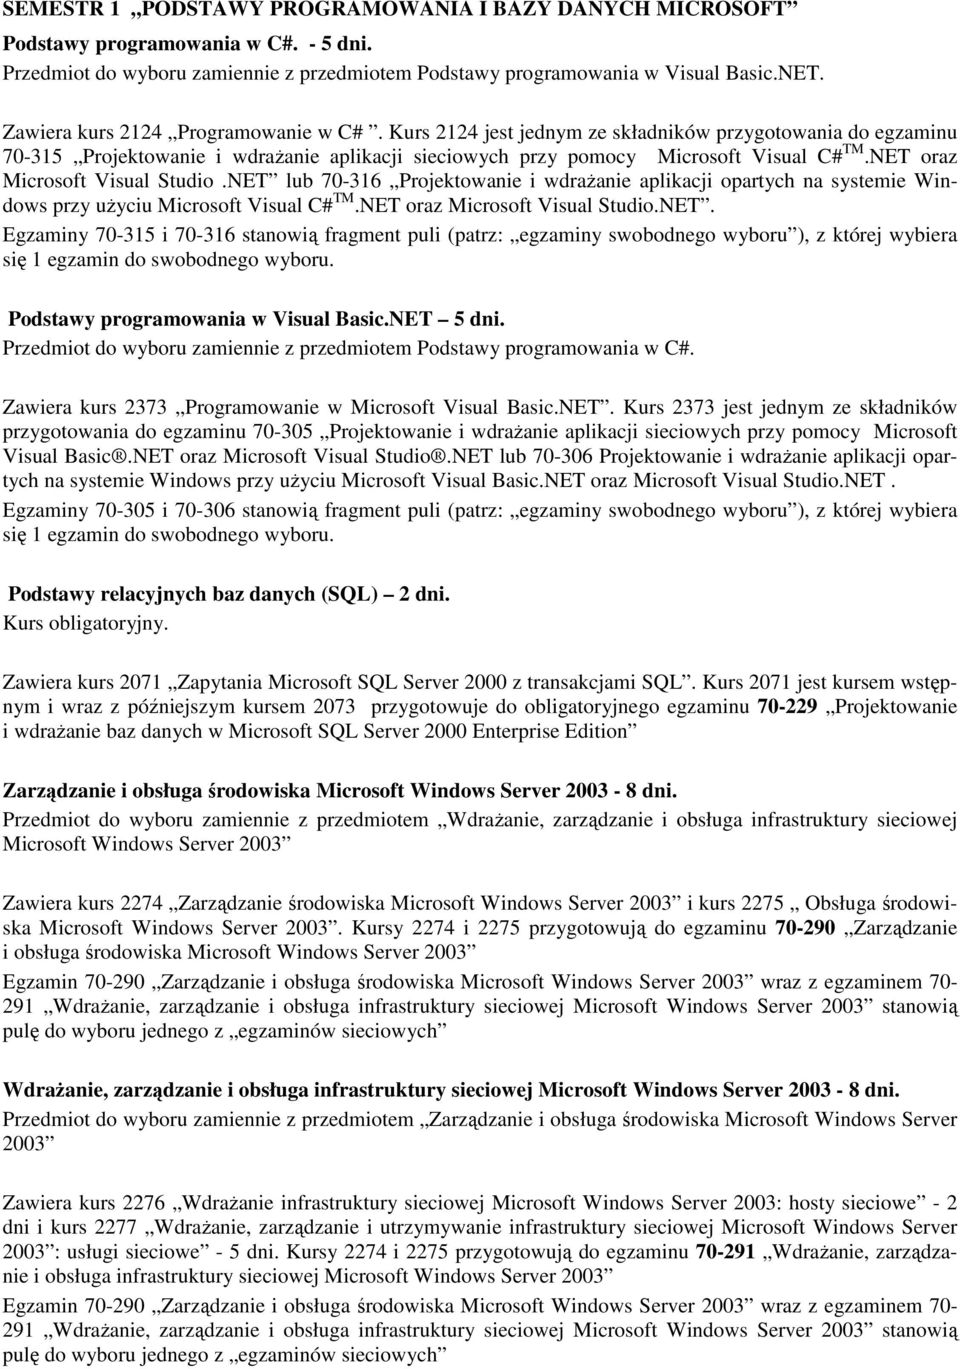 NET oraz Microsoft Visual Studio.NET lub 70-316 Projektowanie i wdraŝanie aplikacji opartych na systemie Windows przy uŝyciu Microsoft Visual C# TM.NET oraz Microsoft Visual Studio.NET. Egzaminy 70-315 i 70-316 stanowią fragment puli (patrz: egzaminy swobodnego wyboru ), z której wybiera się 1 egzamin do swobodnego wyboru.